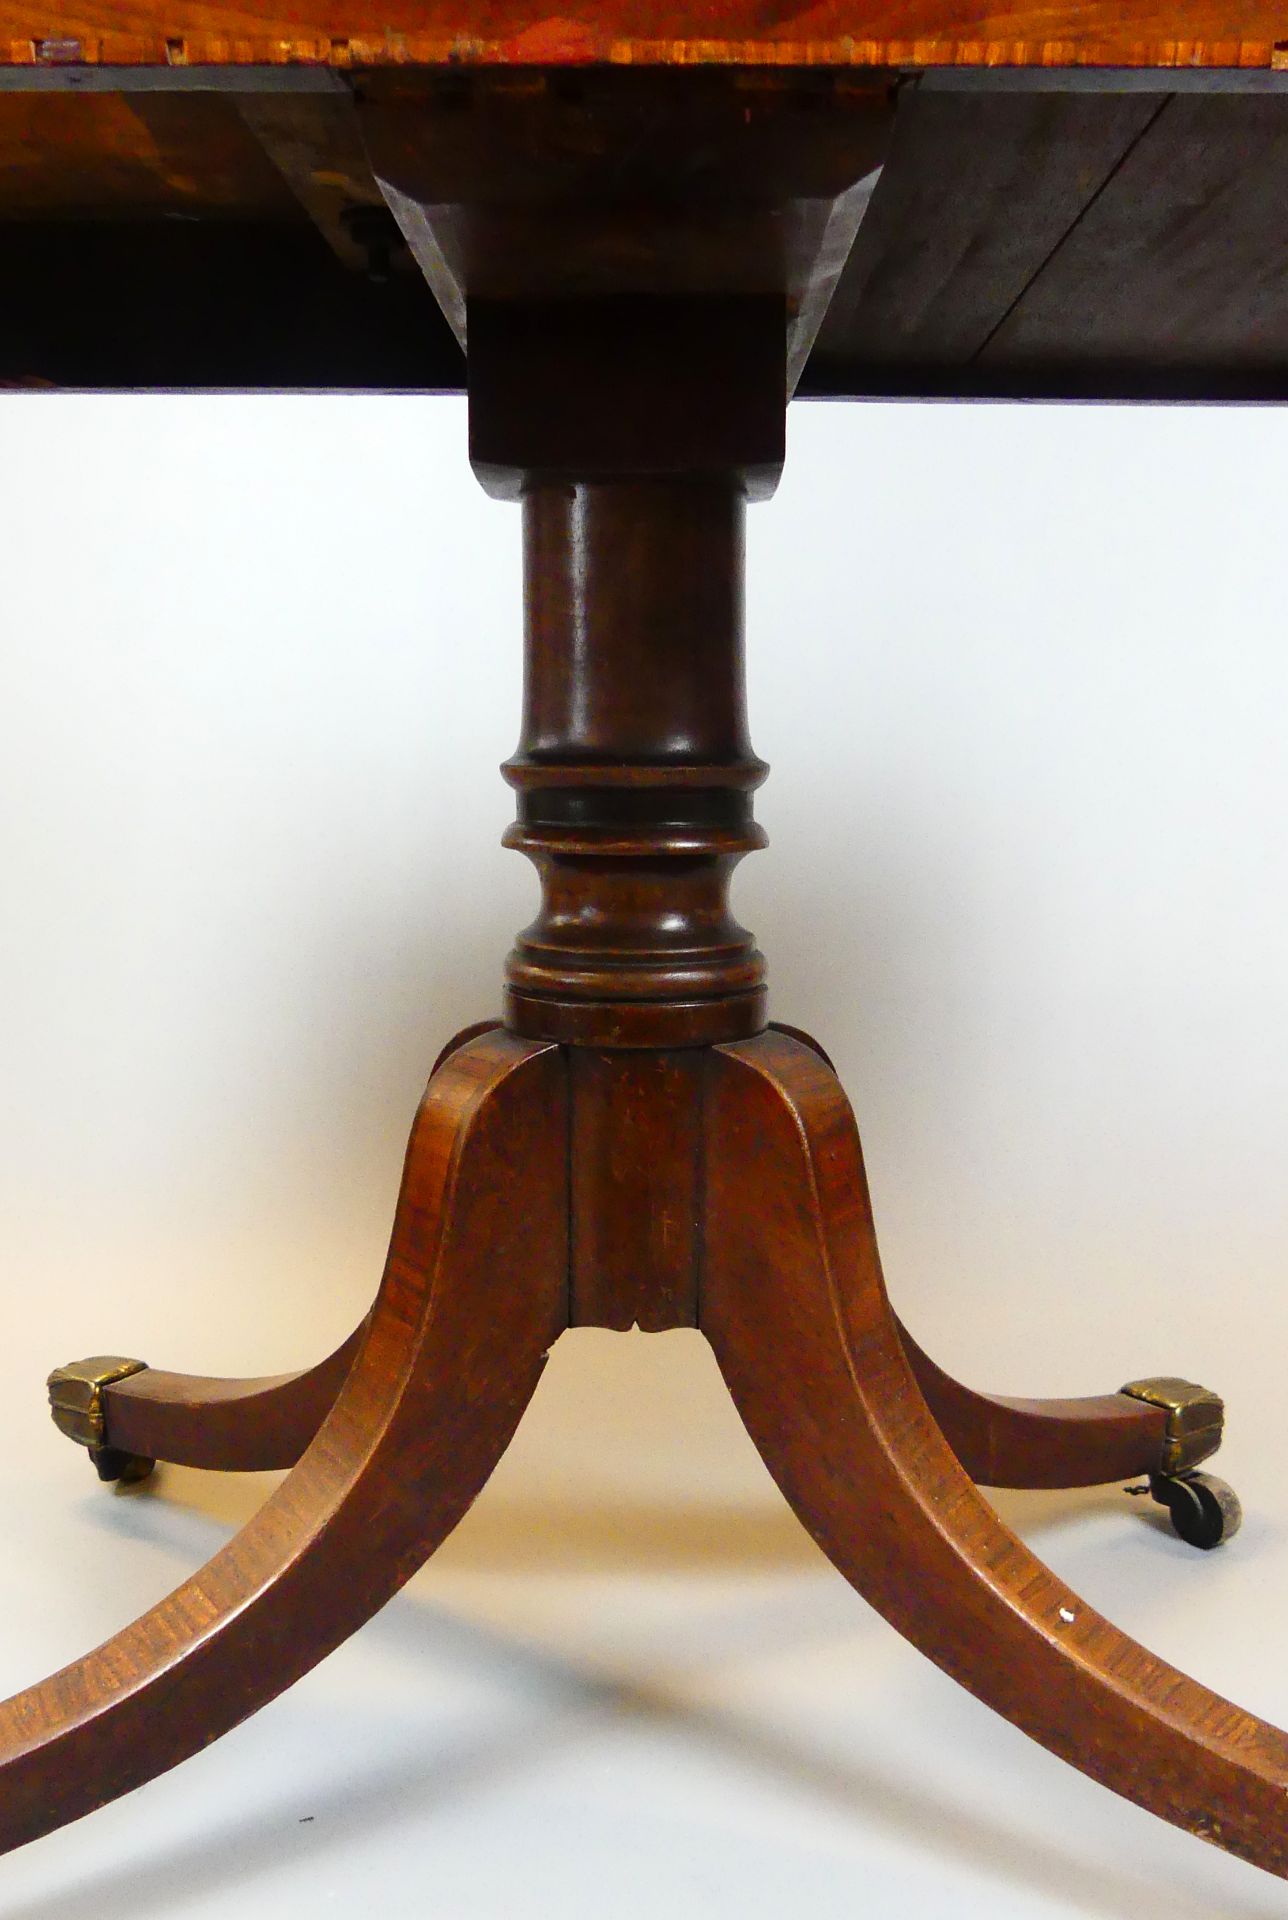 Spieltisch, Mahagoni, auf Rollen, Filzbezug, aufklappbar und drehbar, - Image 2 of 4